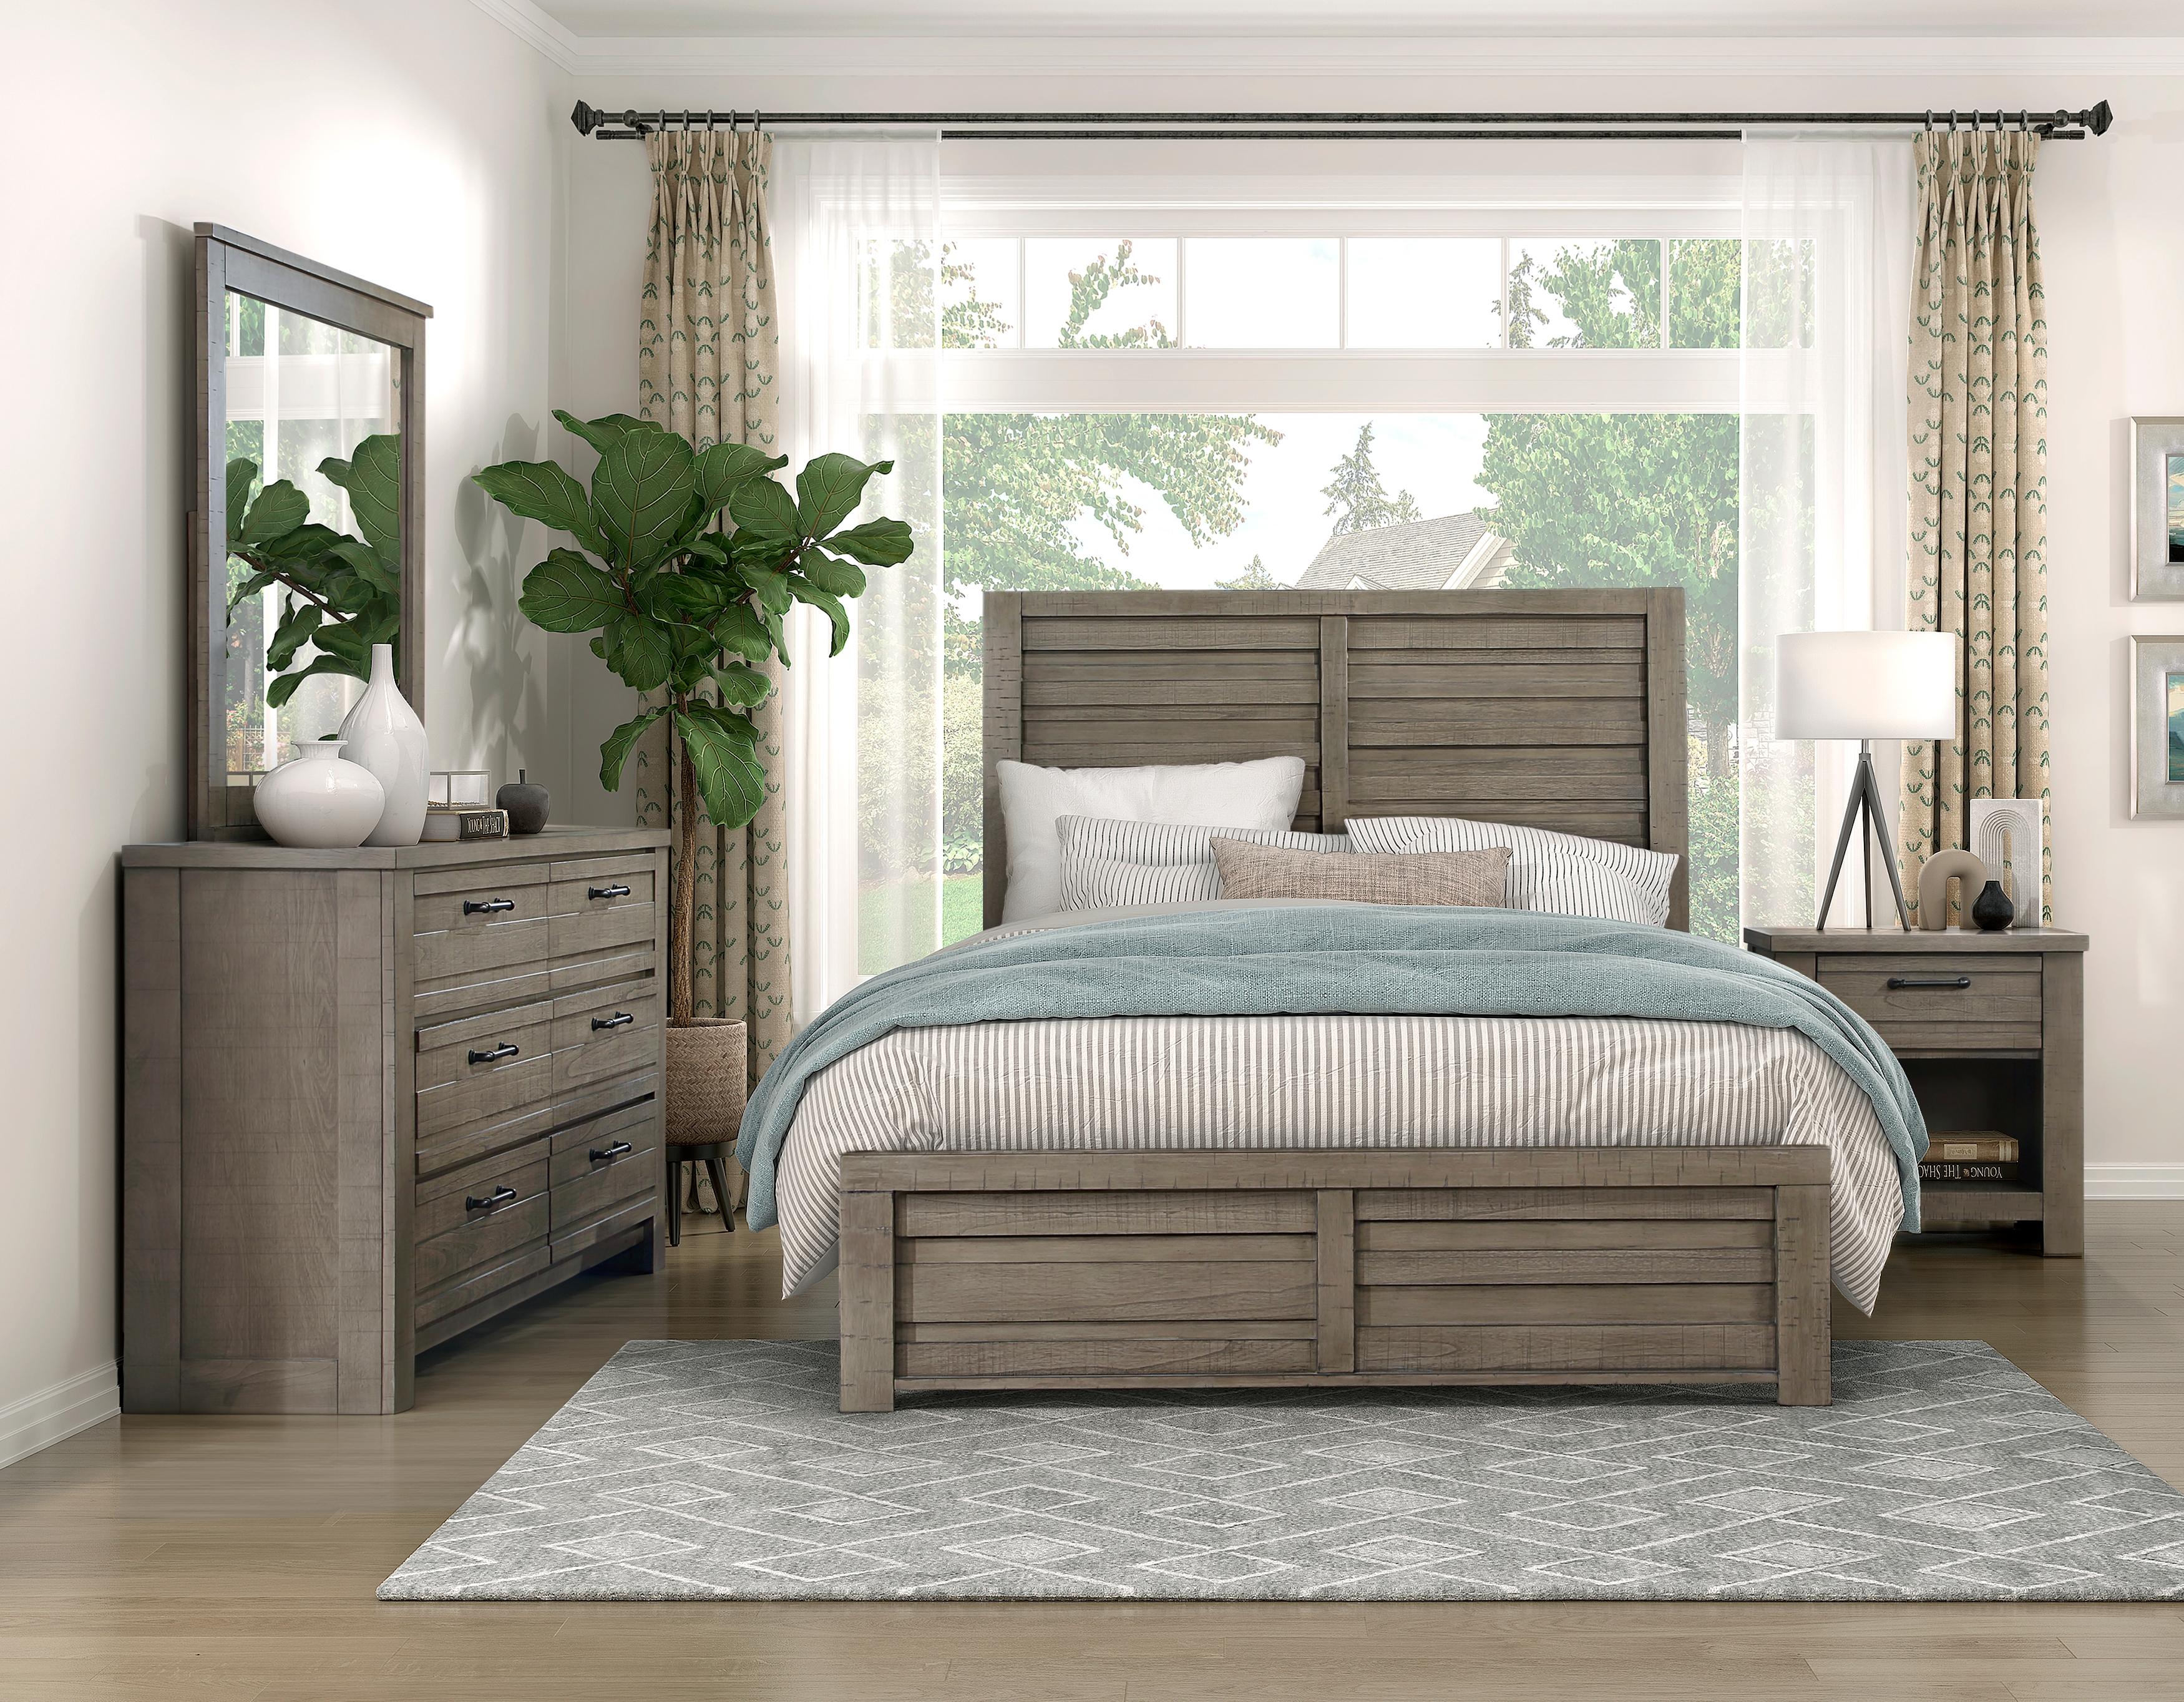 

    
Rustic Gray Wood Queen Panel Bedroom Set 6PCS Homelegance Longview 1498GY-1-Q-6PCS
